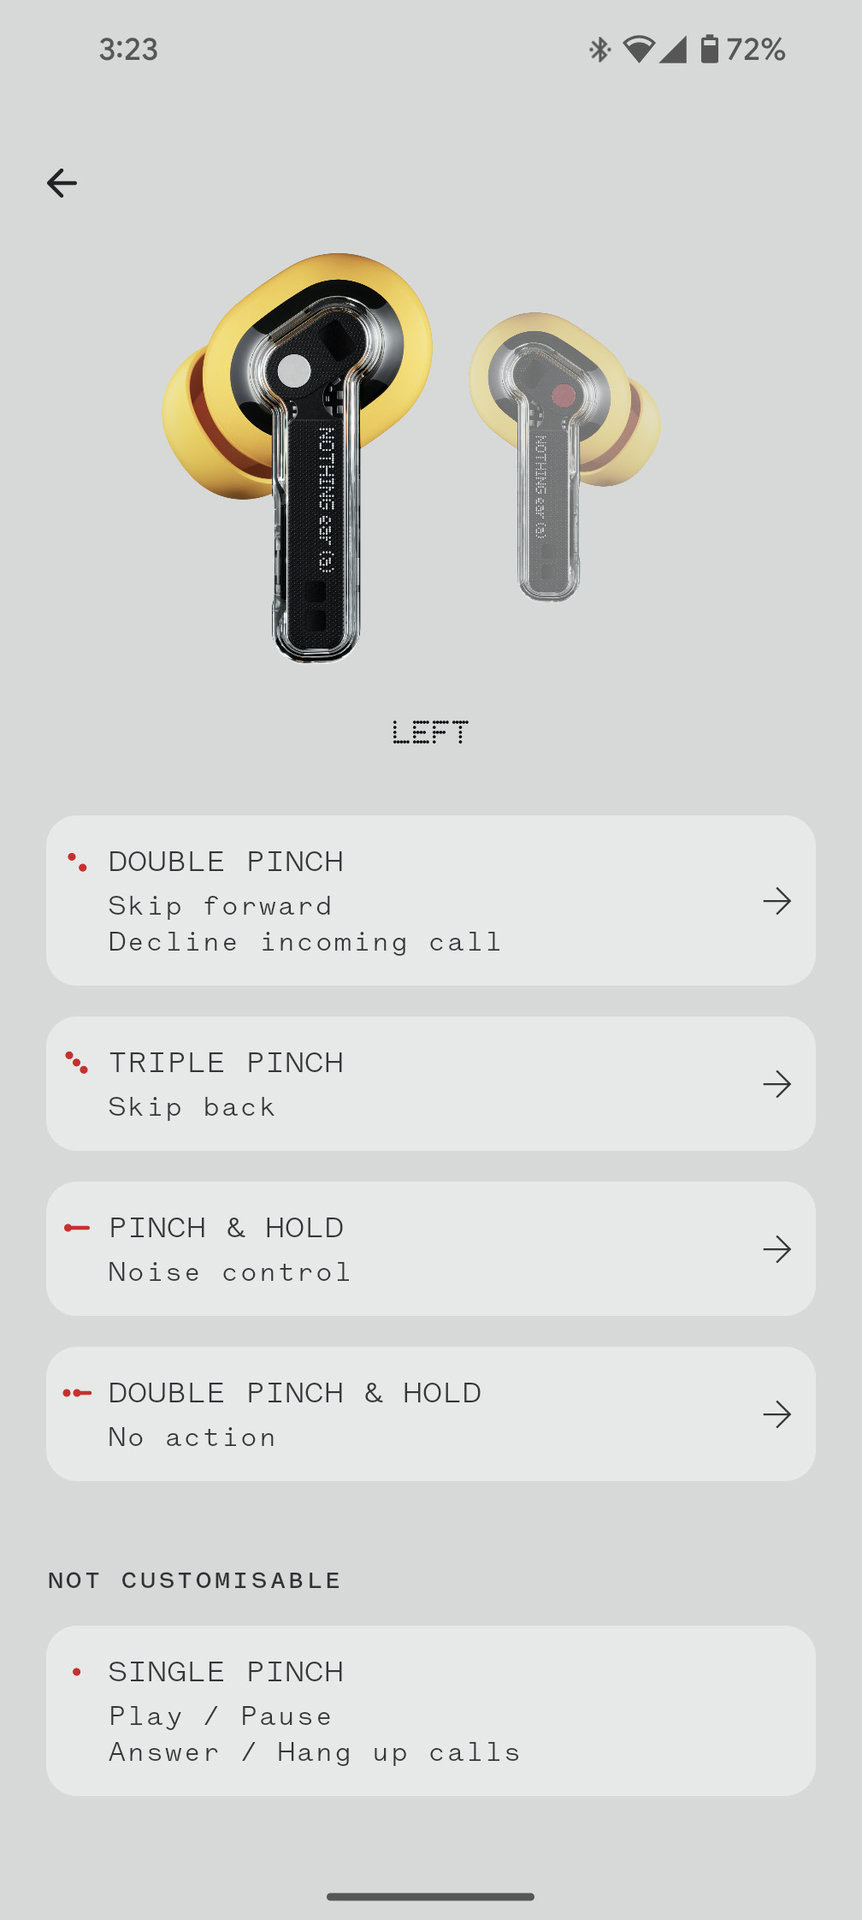 nic x zrzut ekranu aplikacji ucho i szczypta kontroli